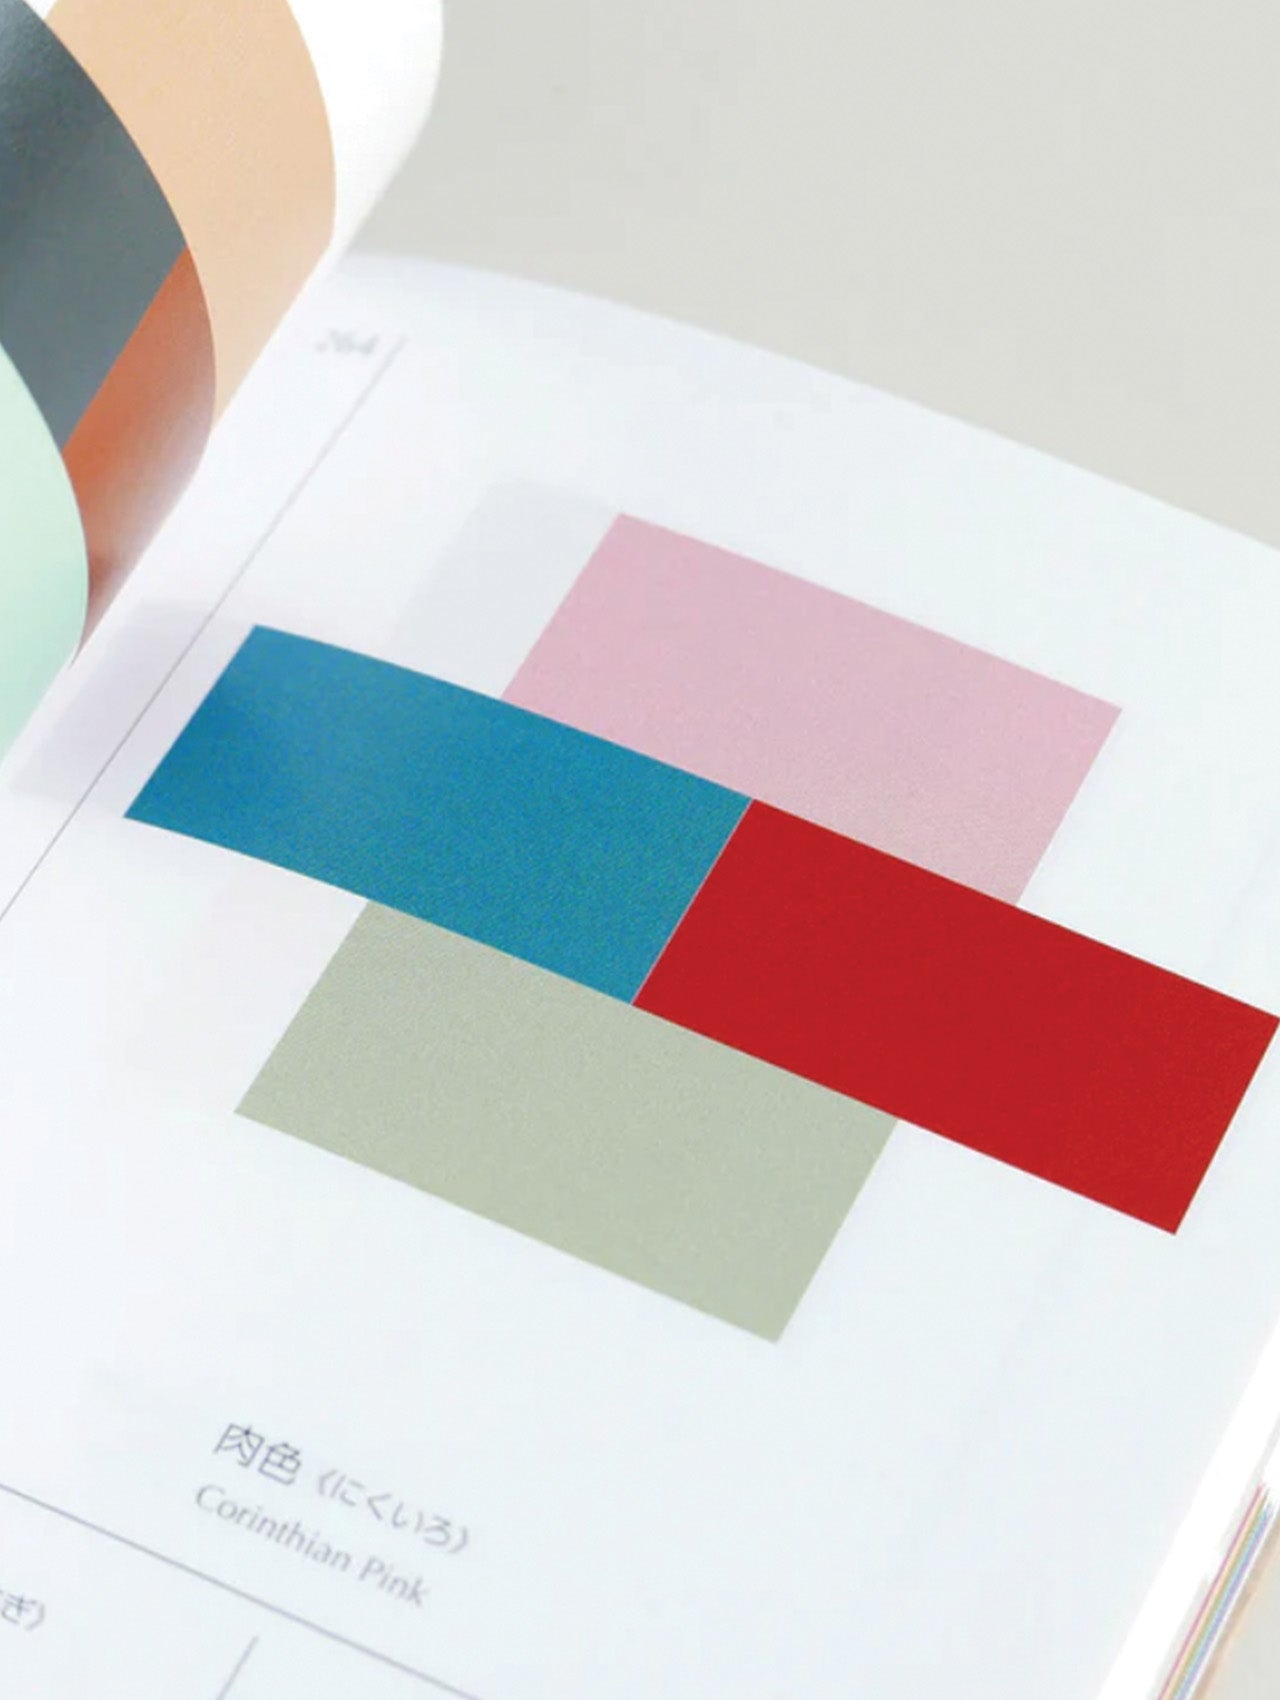 Seigensha - A Dictionary of Color Combinations – JINEN